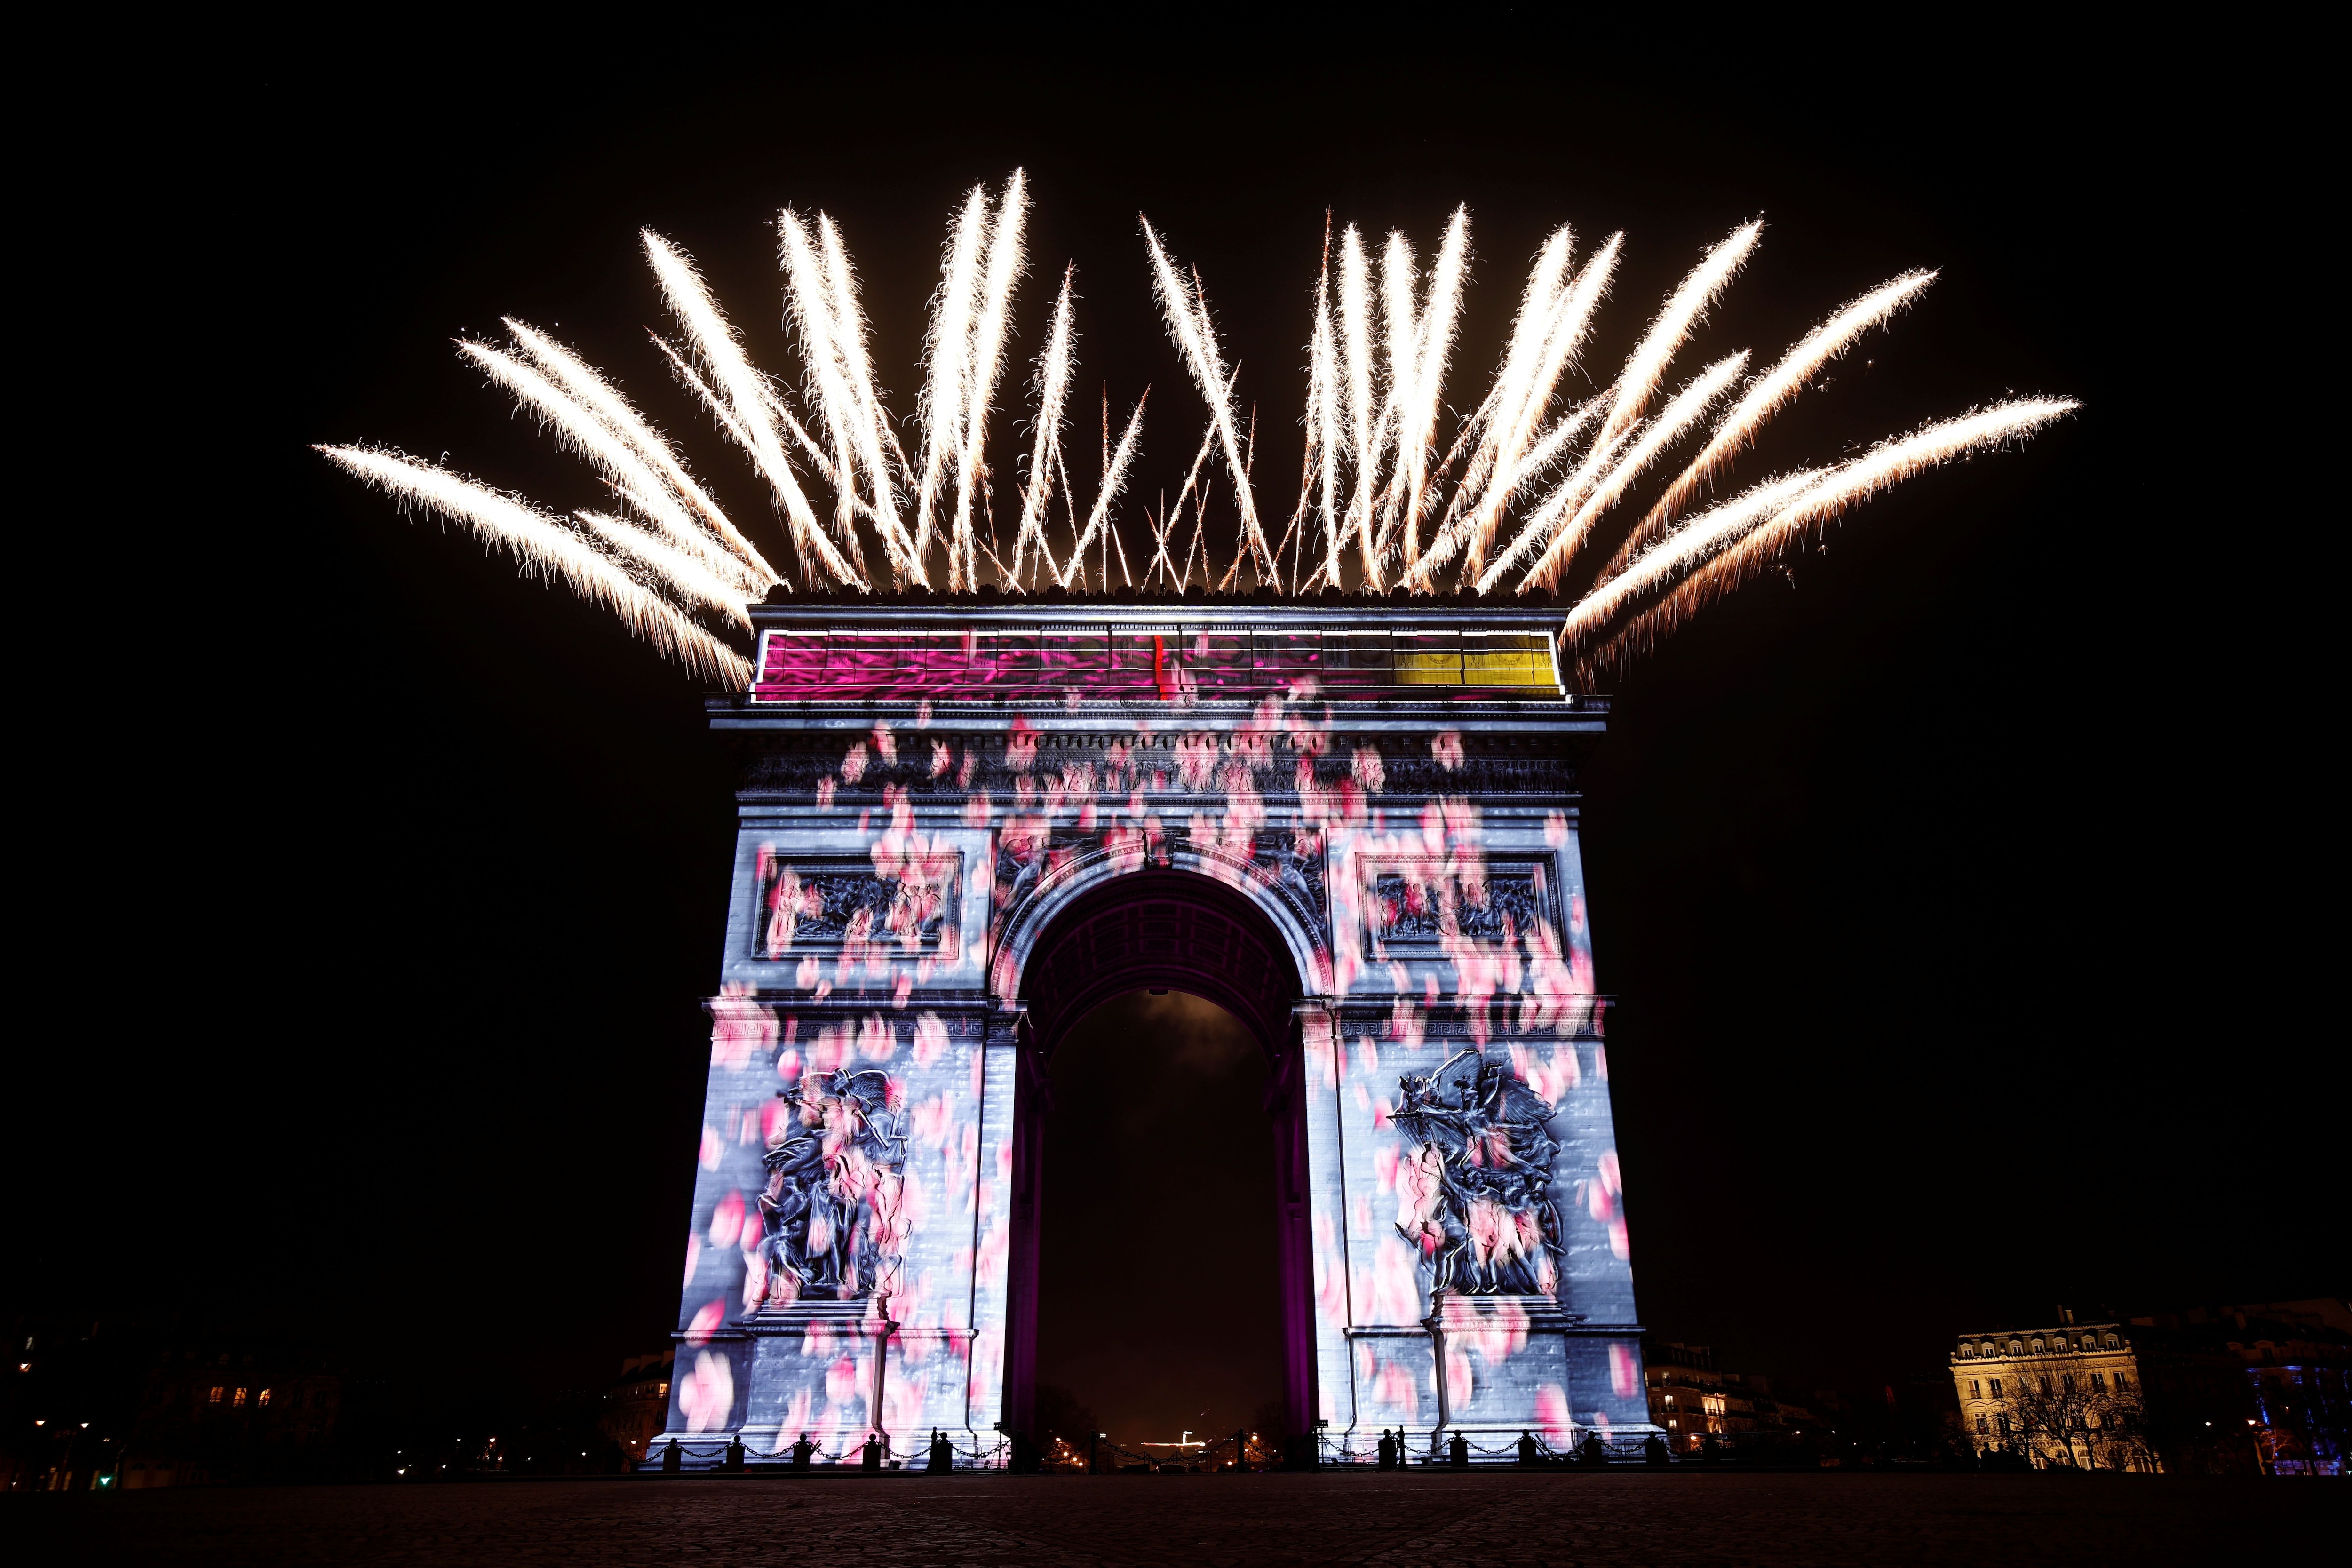 Los fuegos artificiales iluminan el cielo sobre el Arco del Triunfo durante las celebraciones de Año Nuevo en los Campos Elíseos en París, el 31 de diciembre de 2019. REUTERS/Benoit Tessier